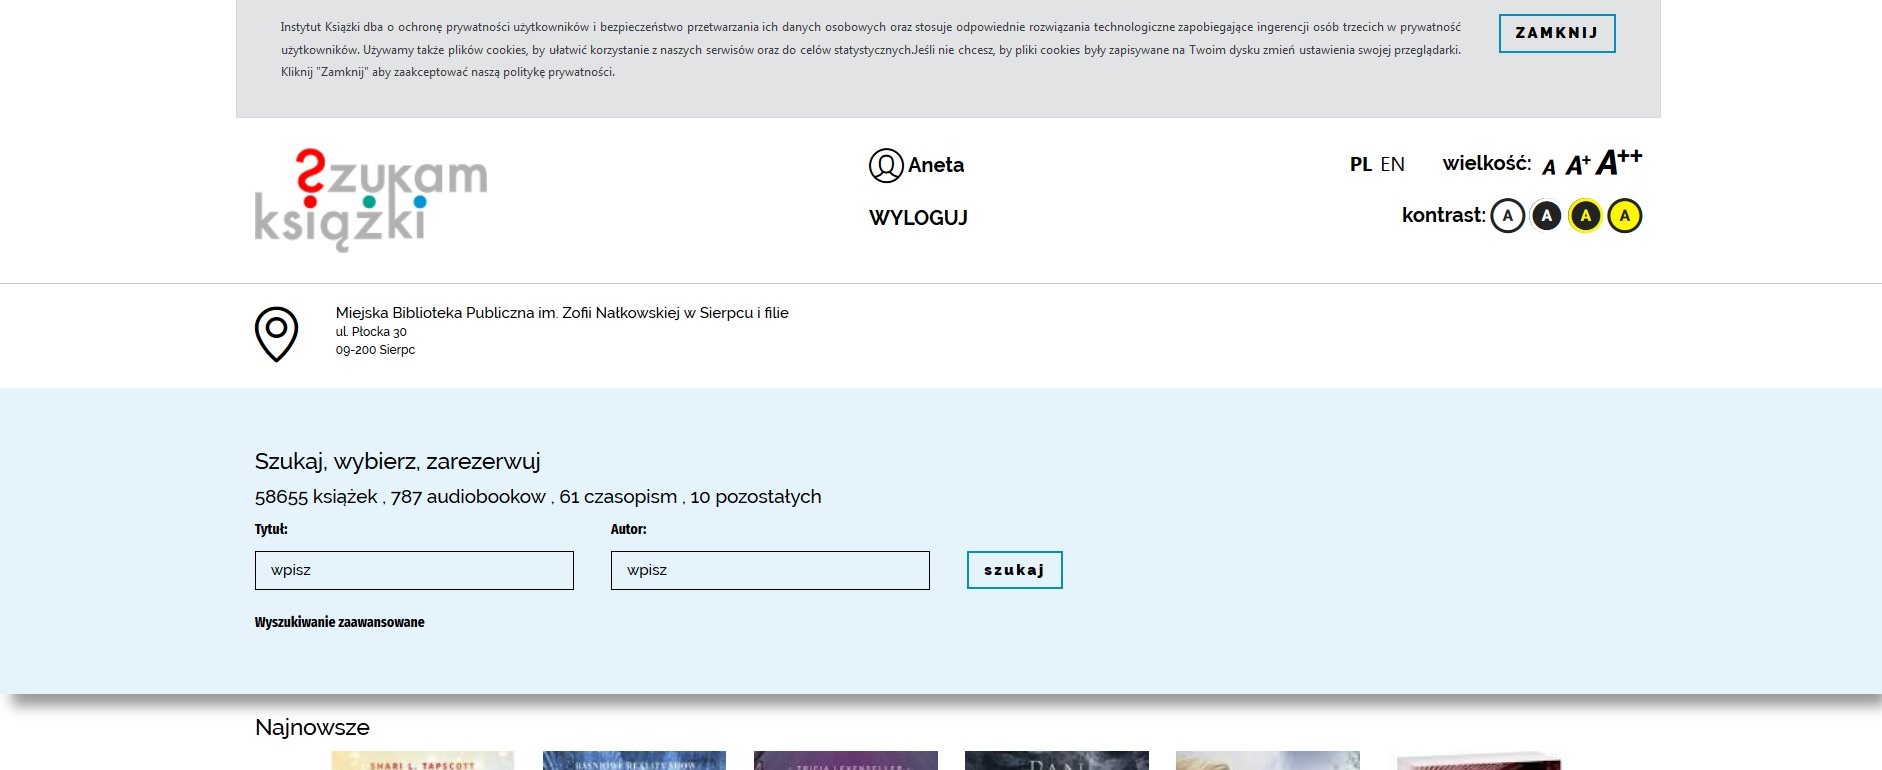 Strona szukamksiązki.pl. U góry ikonka oznaczająca człowieka i imię zalogowanego użytkownika. Poniżej przycisk Wyloguj.